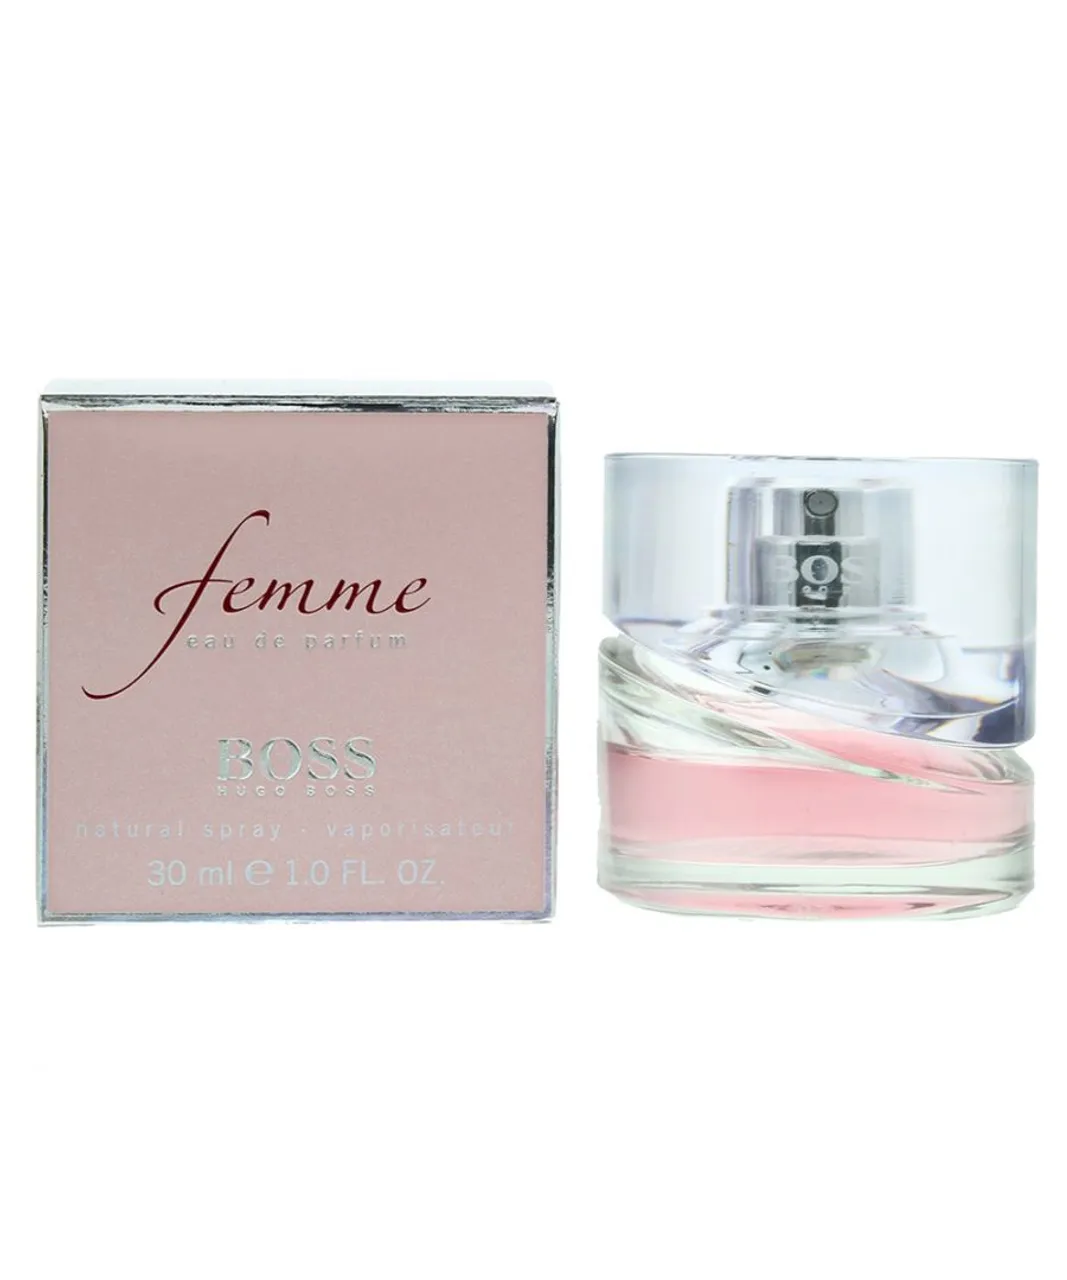 Hugo Boss Womens Femme Eau de Parfum 30ml Spray For Her - Rose - One Size